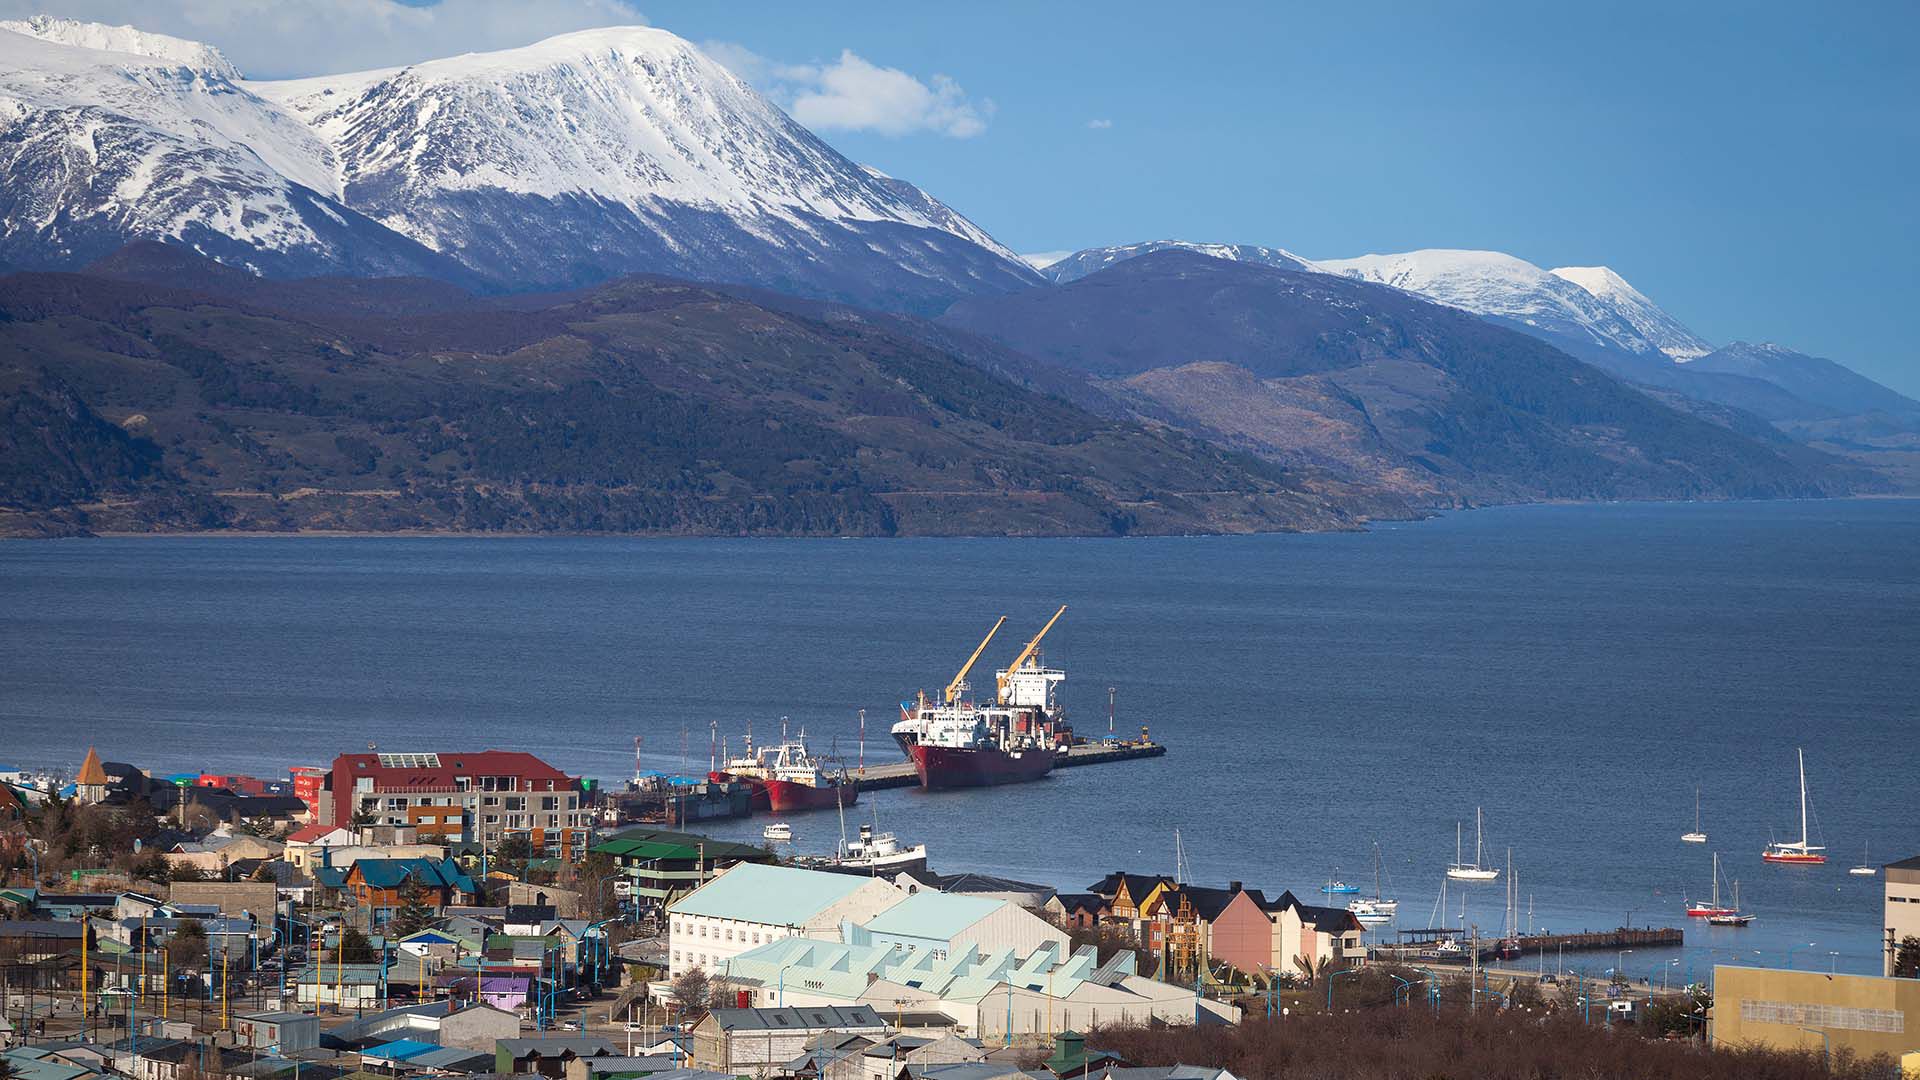 El puerto de Ushuaia fue dragado y ampliado para recibir a los cruceros que viajan hasta la Antártida (Shutterstock)